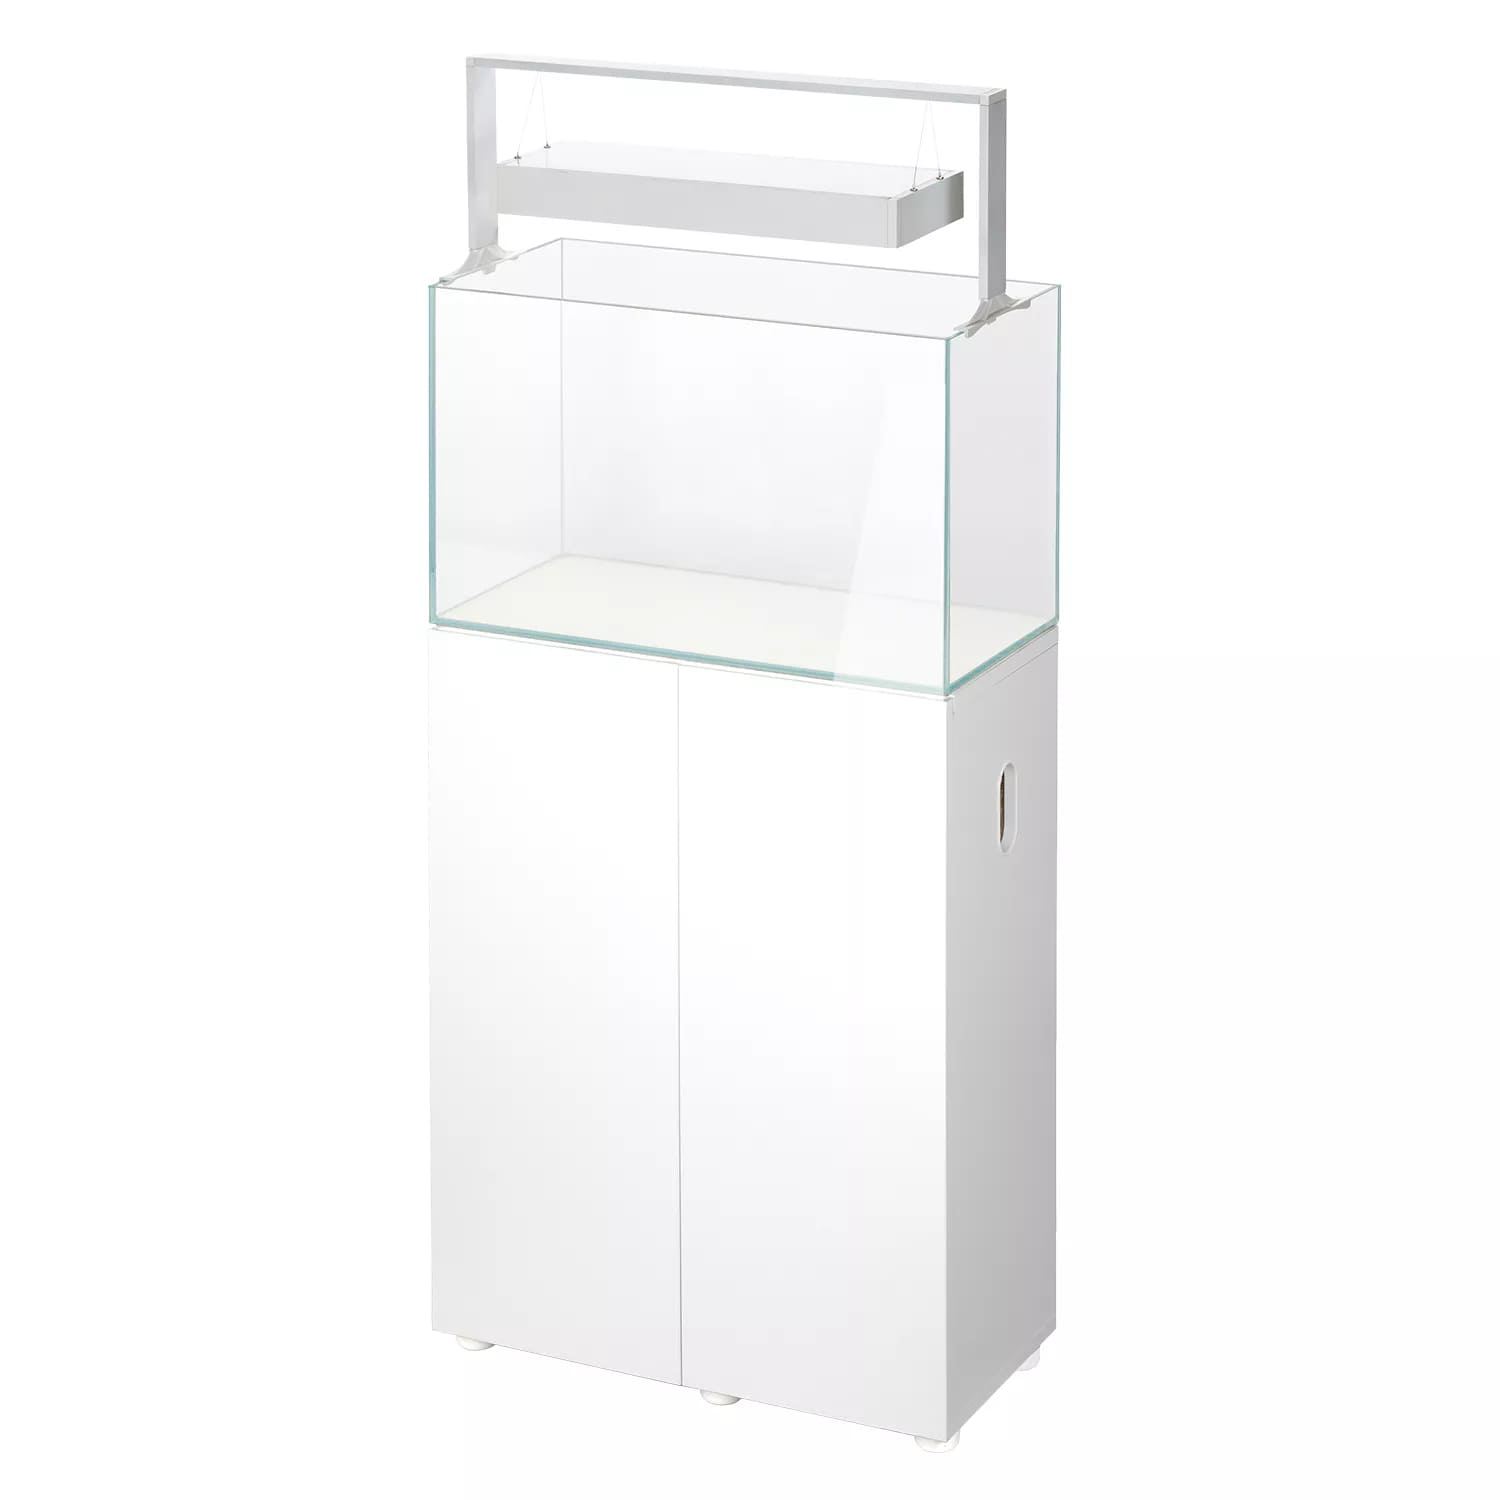 aquael-meuble-ultrascape-60-snow-dimensions-60-x-30-x-80-cm-pour-aquarium-6